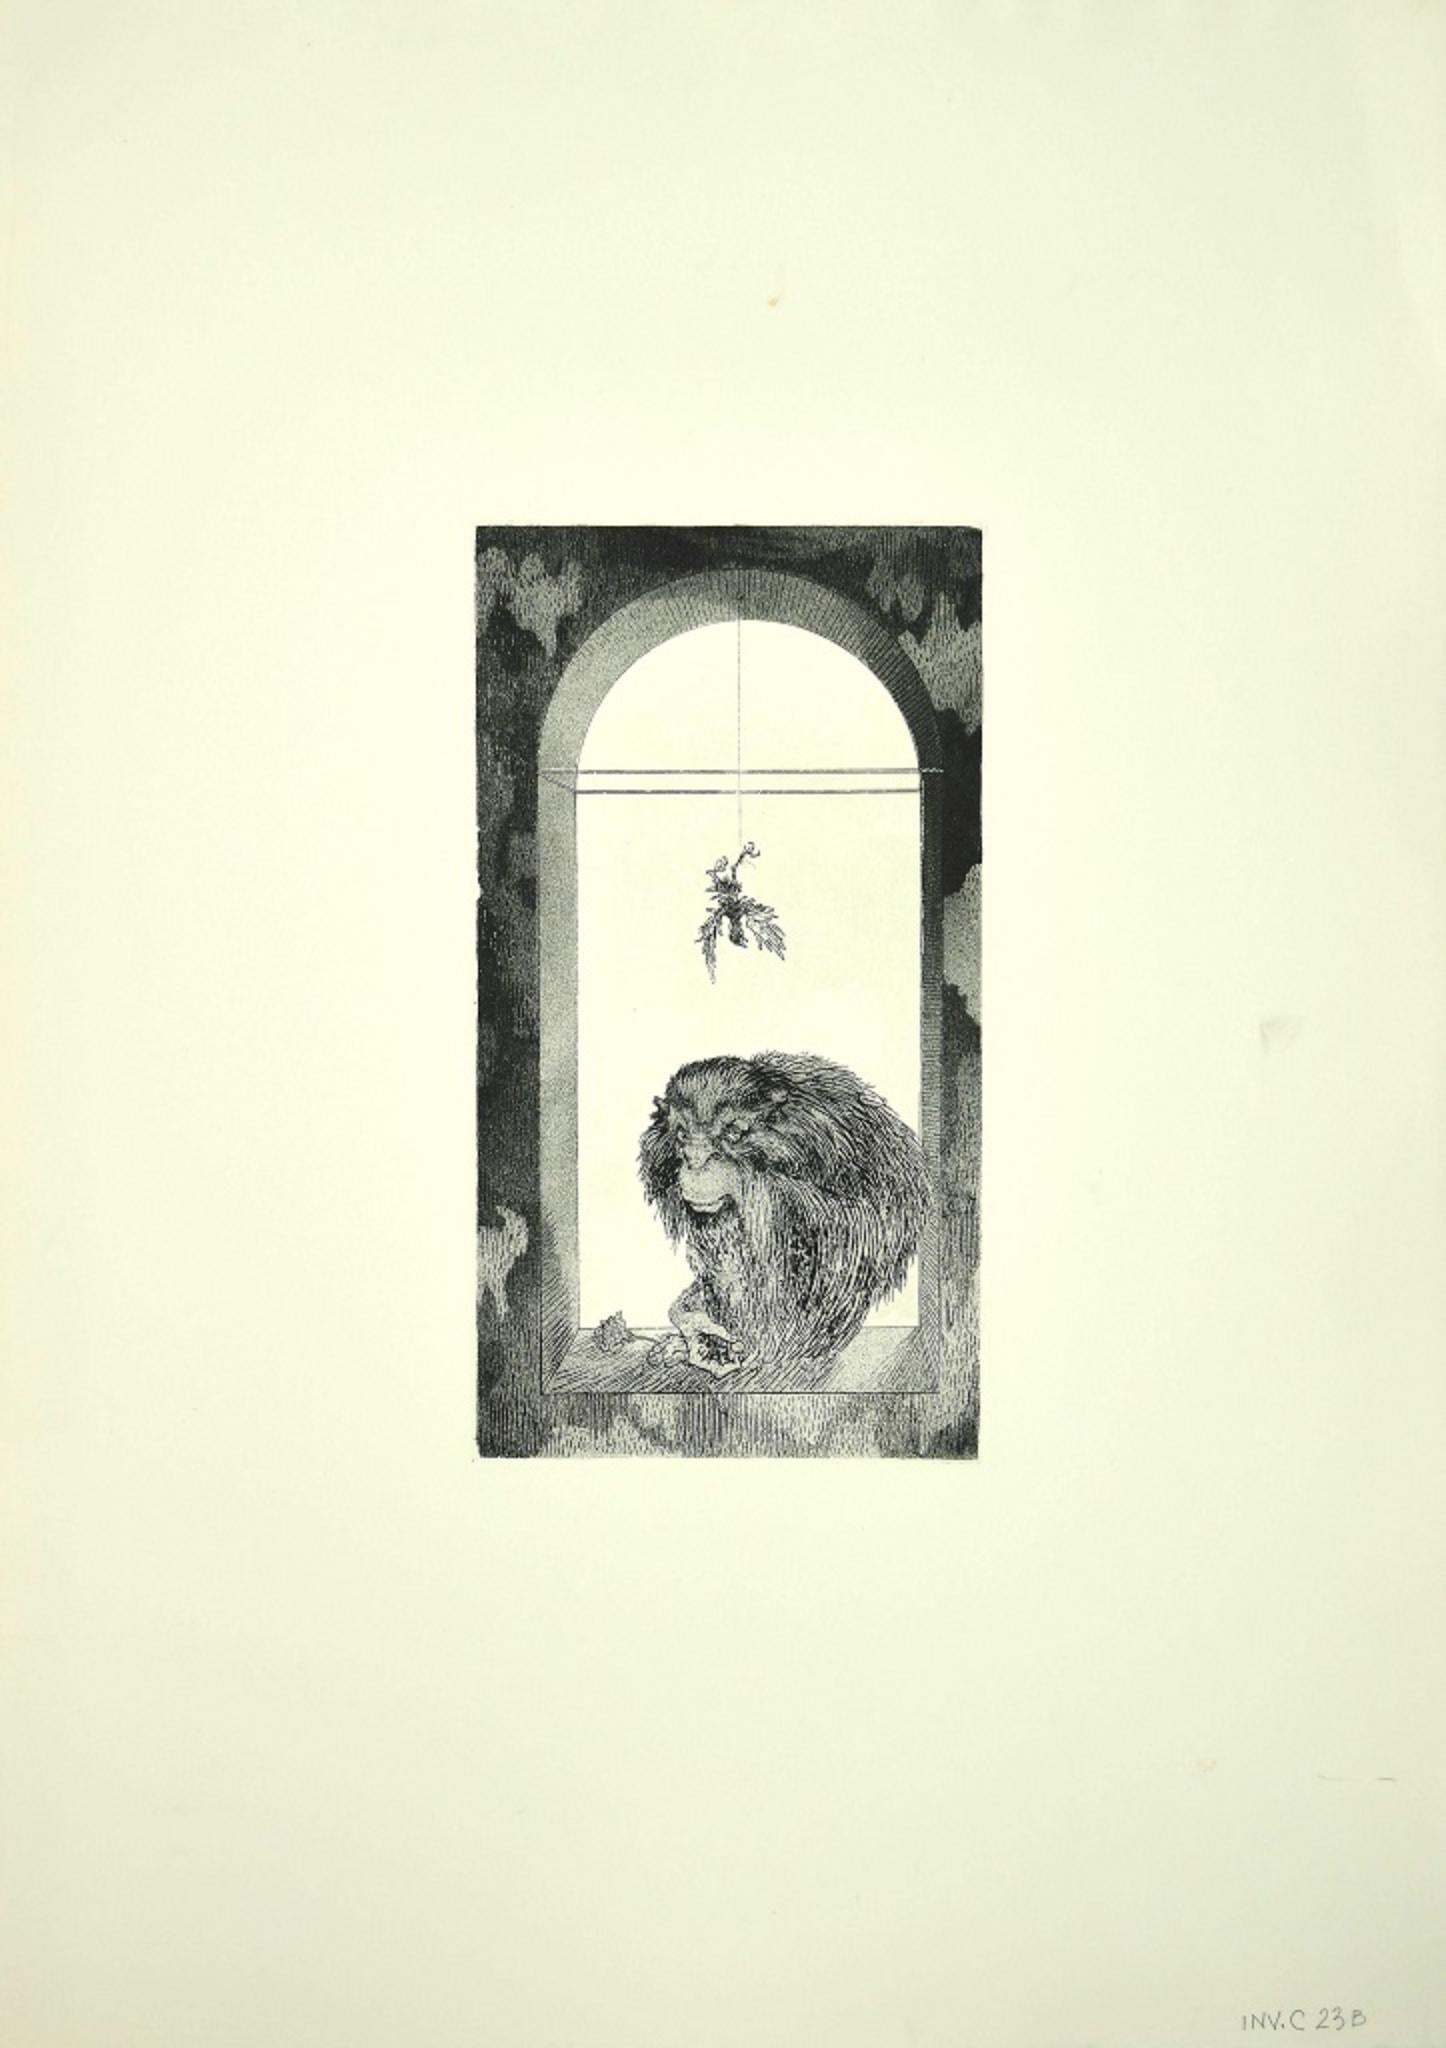 Der Affe ist ein zeitgenössisches Kunstwerk, das der italienische Künstler Leo Guida in den 1970er Jahren geschaffen hat.

Original-Radierung auf Karton.

Neuwertiger Zustand.   Abmessungen des Bildes: 32 x 0,1 x 17 cm.

Leo Guida. Mit seinem Gespür